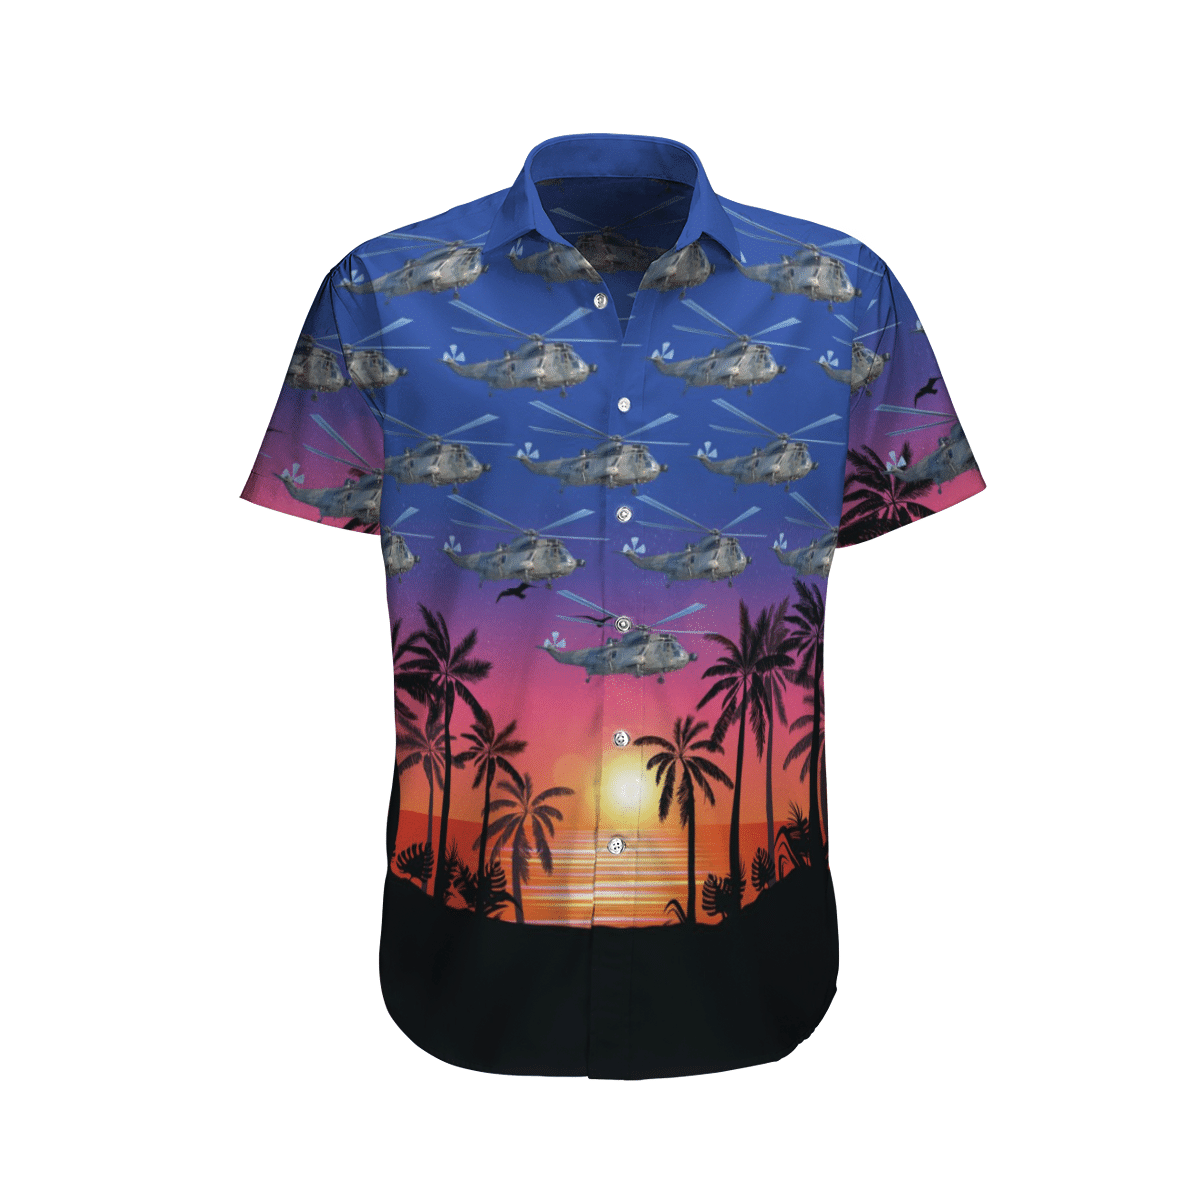 Beautiful Hawaiian shirts for you 15